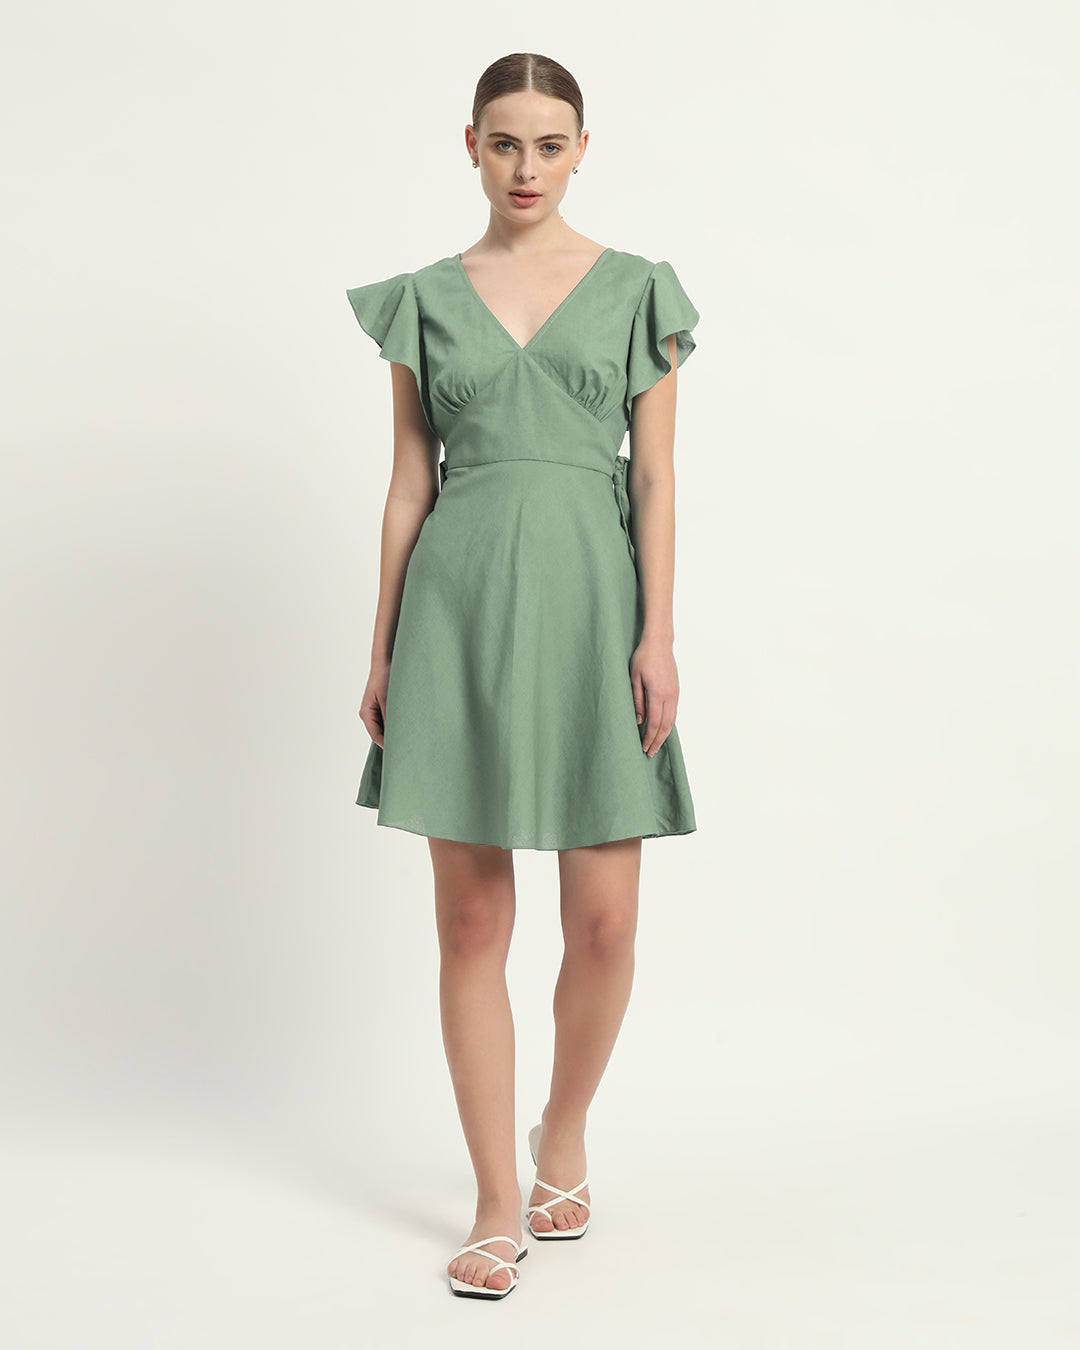 The Fairlie Mint Cotton Dress